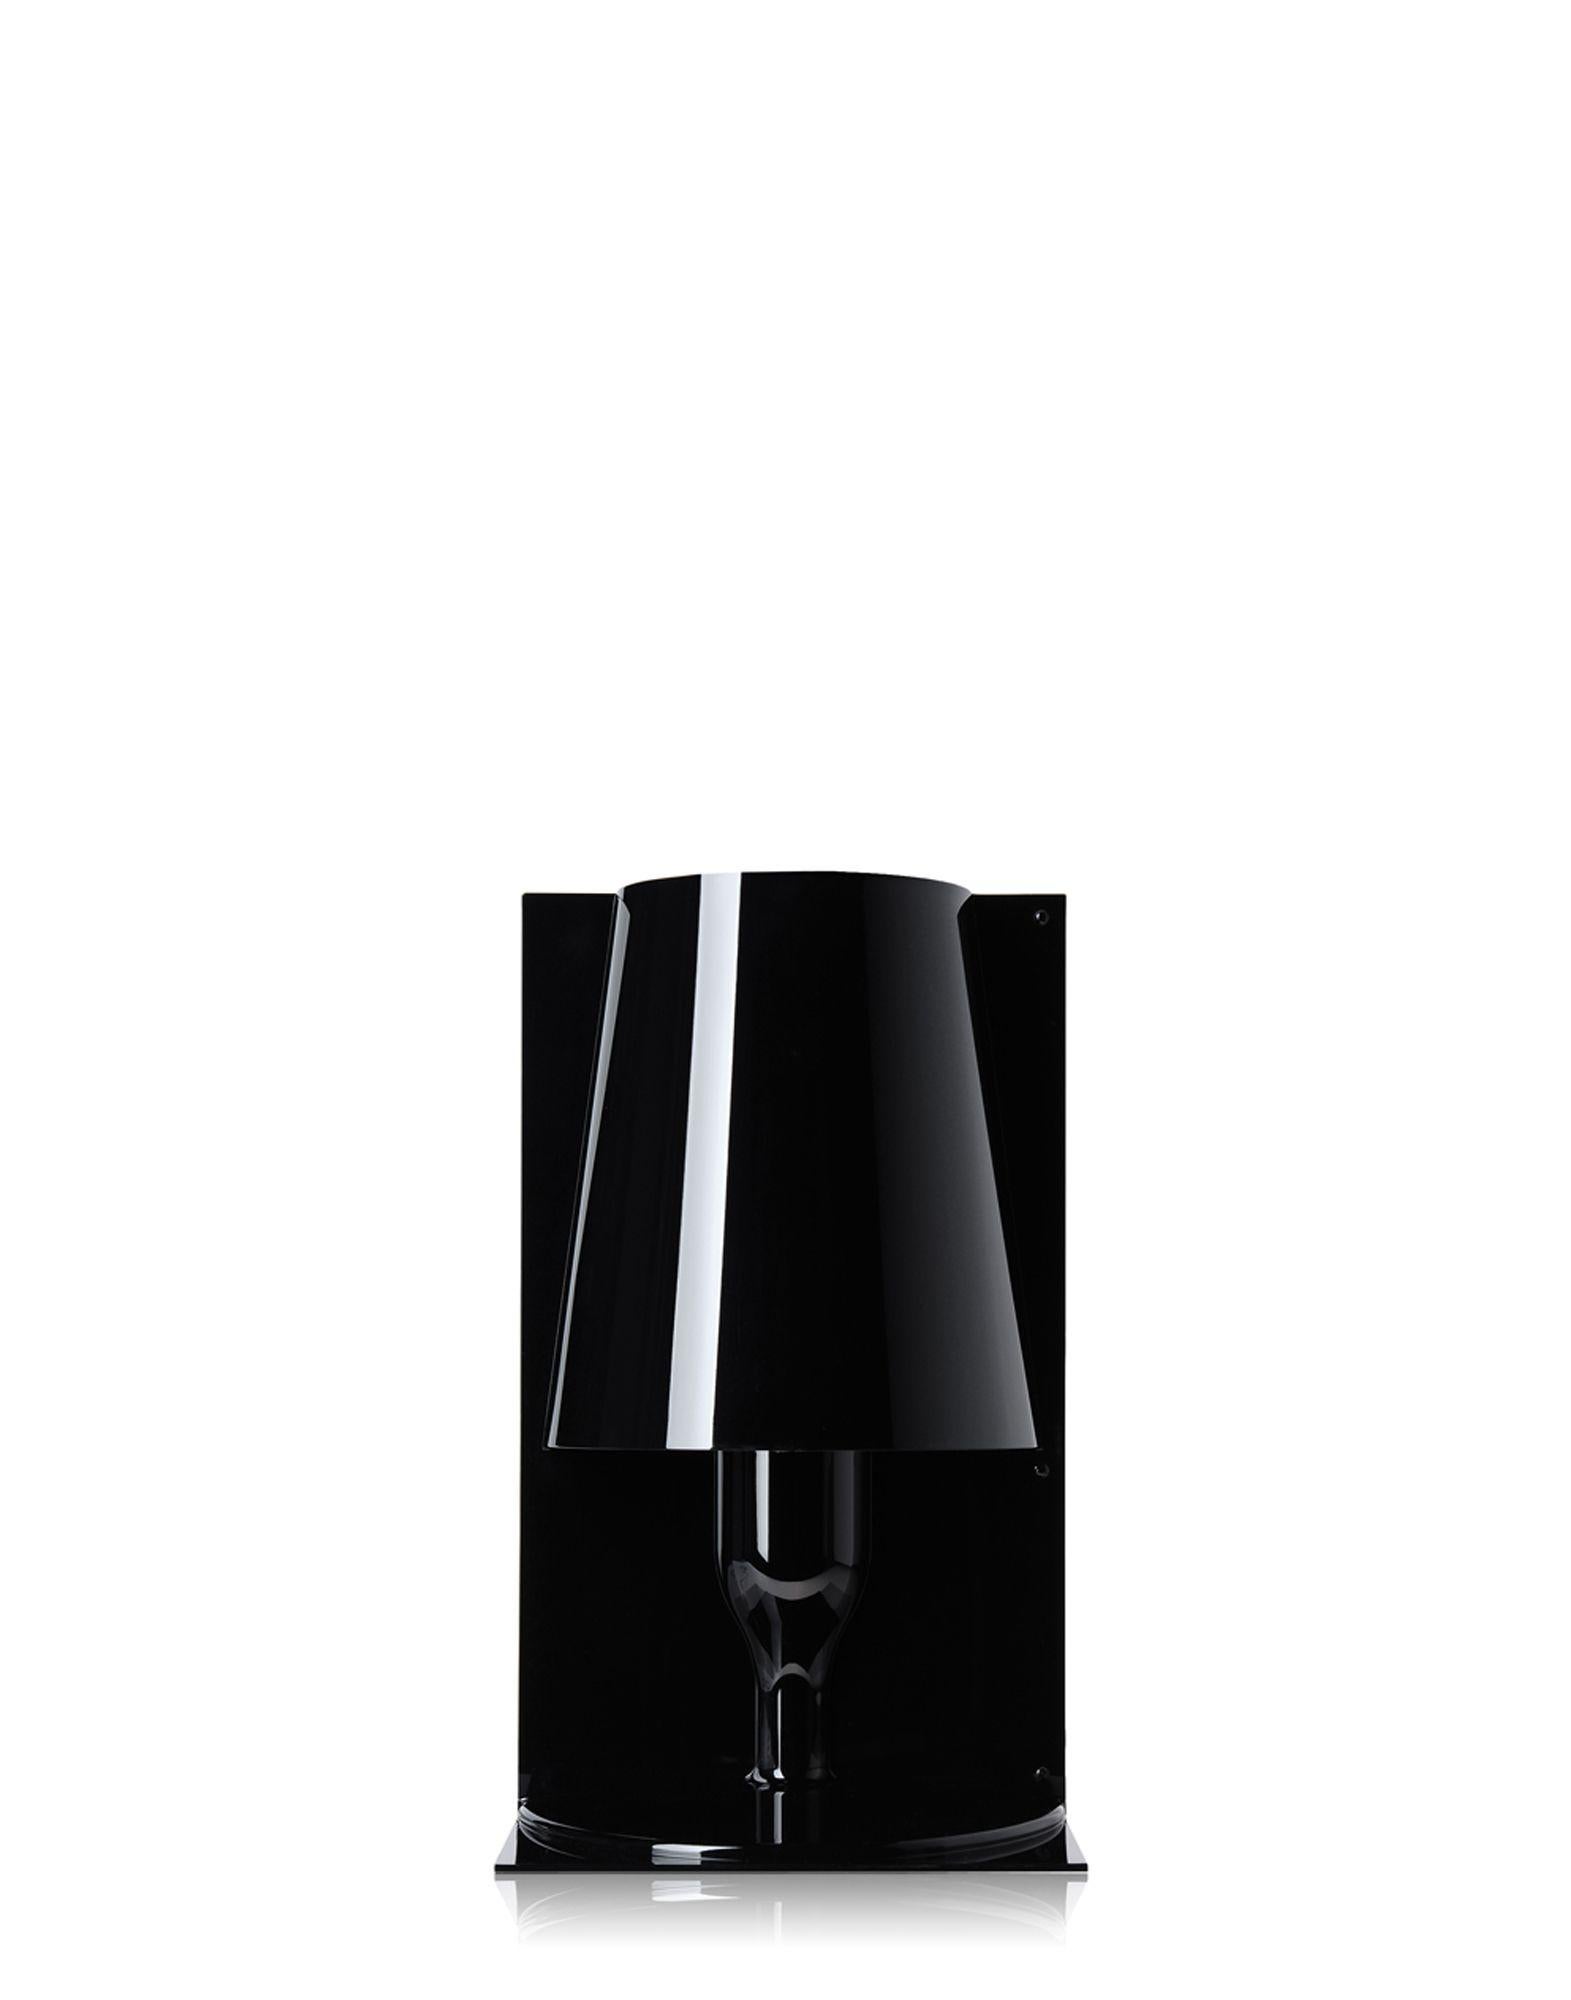 L'icône classique de la lampe de chevet est revisitée par la technologie de Kartell pour devenir un produit industriel dans une variété de nuances de couleurs. La forme de Take est le résultat de la réunion de deux parties spéculaires : deux